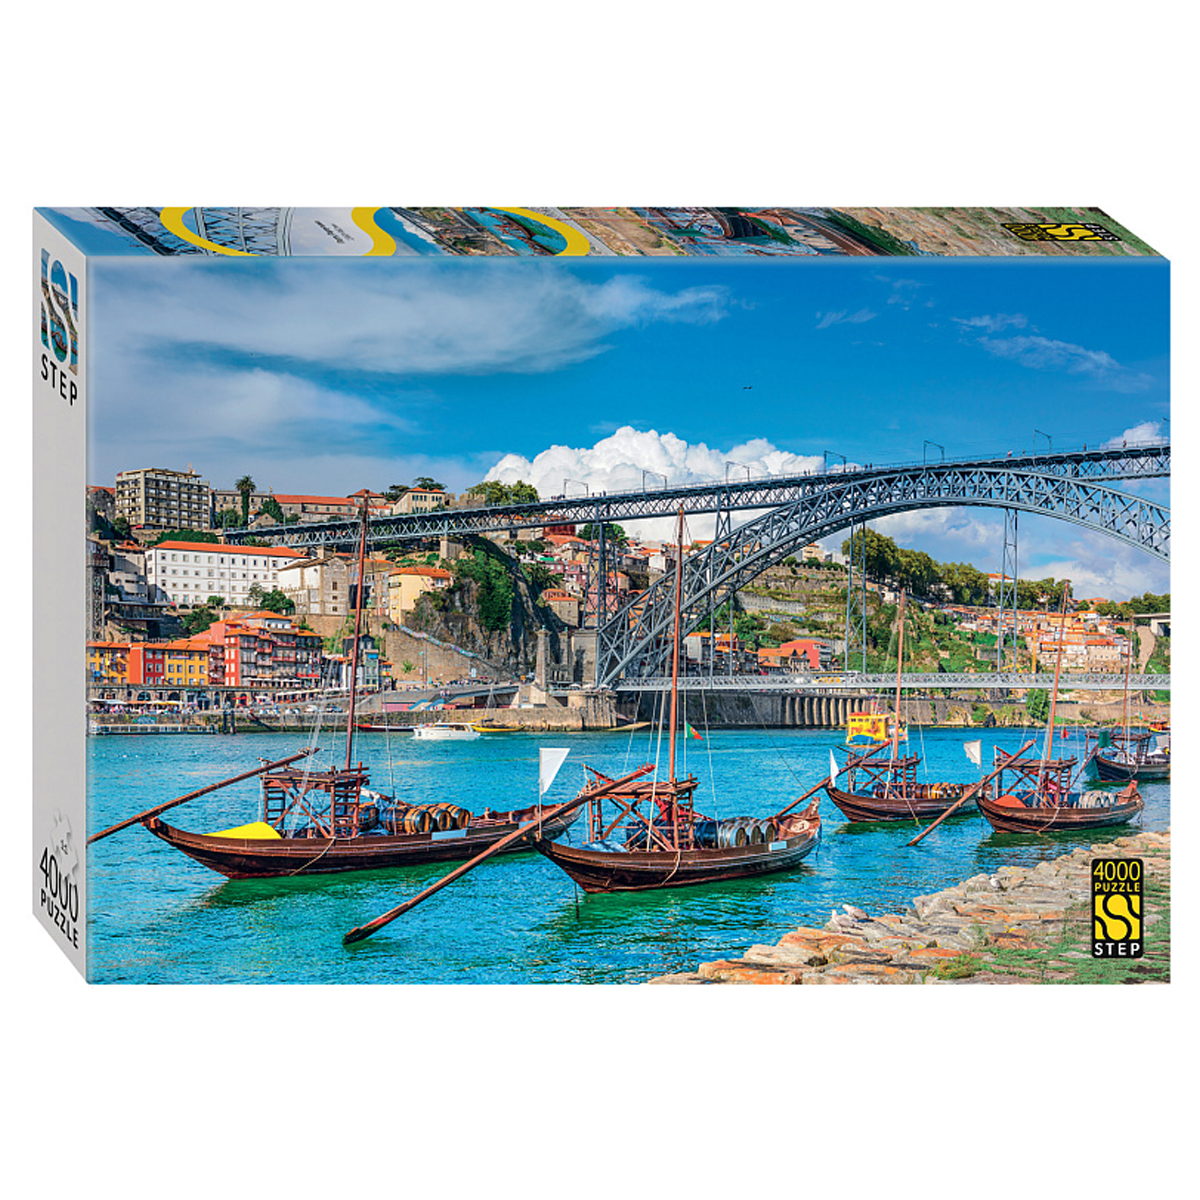 Пазл 4000 эл. Step Puzzle Порту Португалия